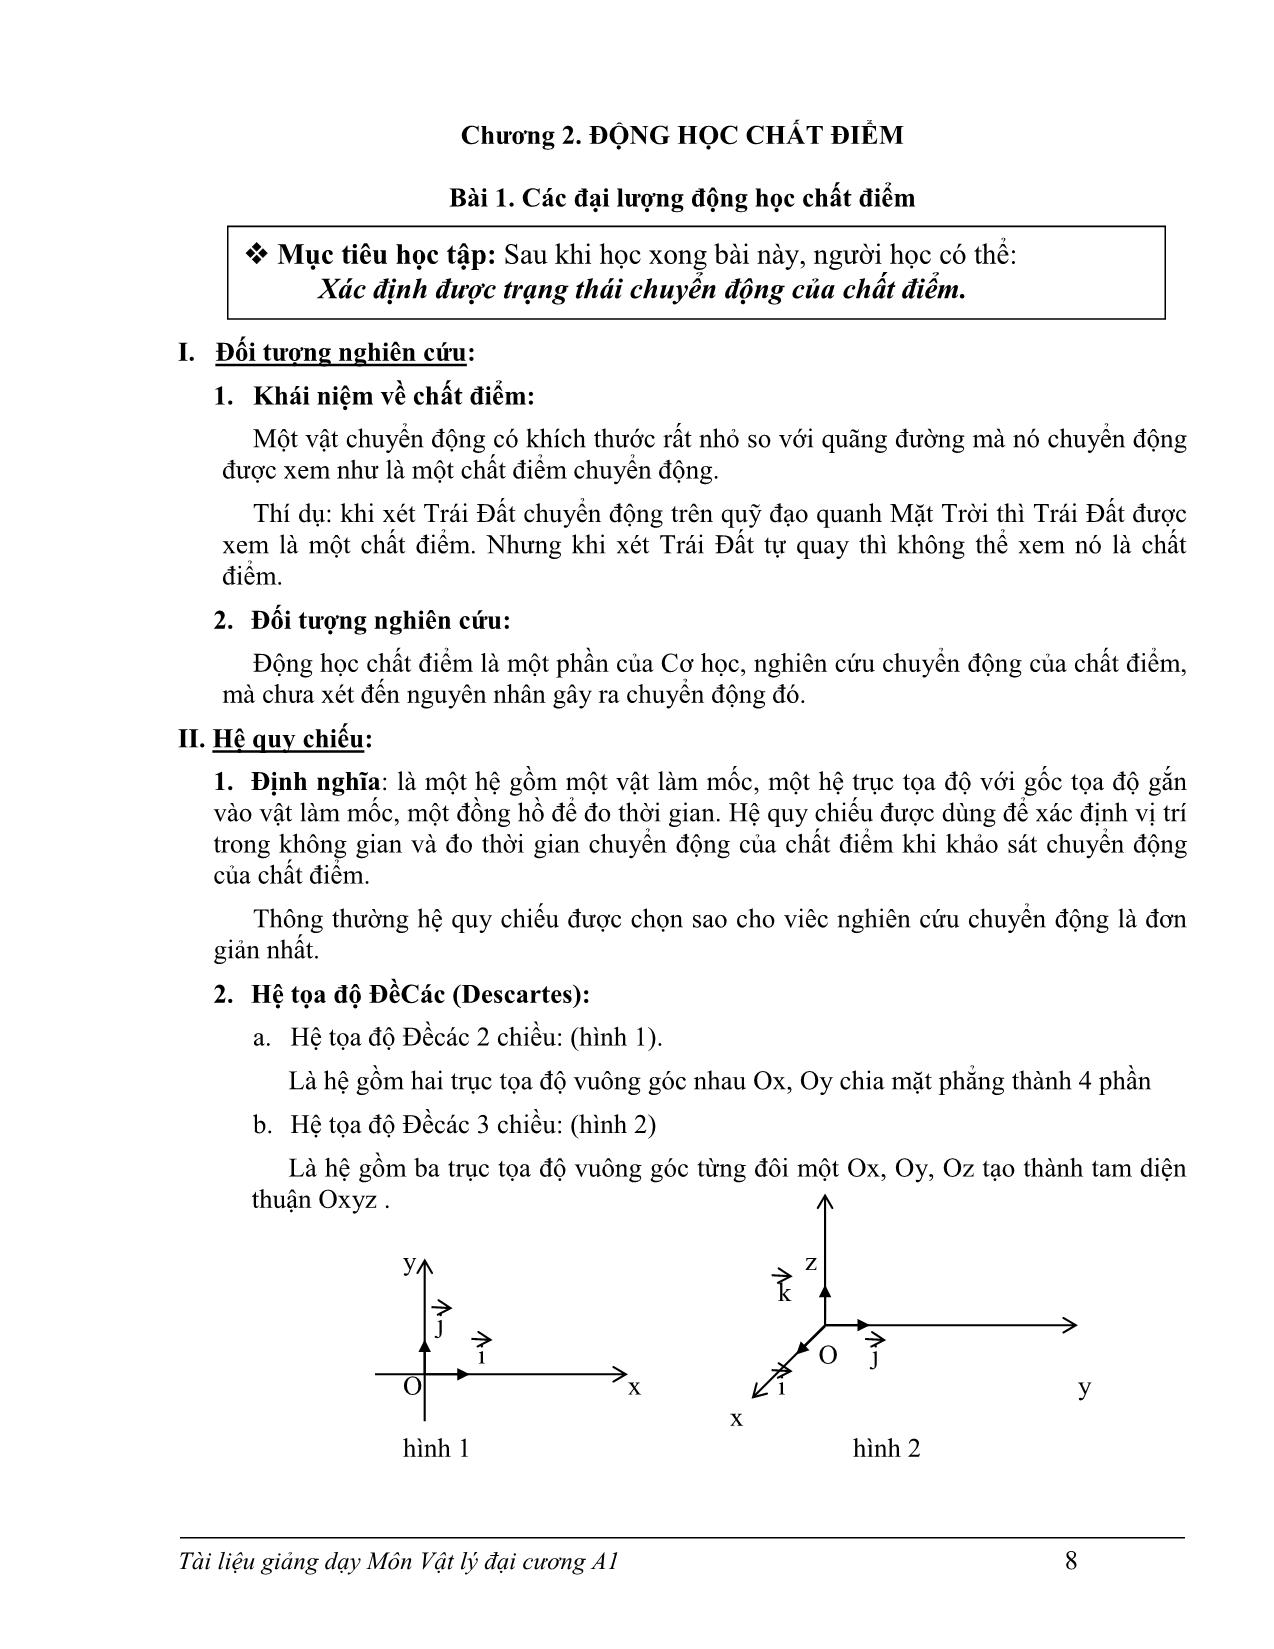 Giáo trình Vật lý đại cương A1 trang 10